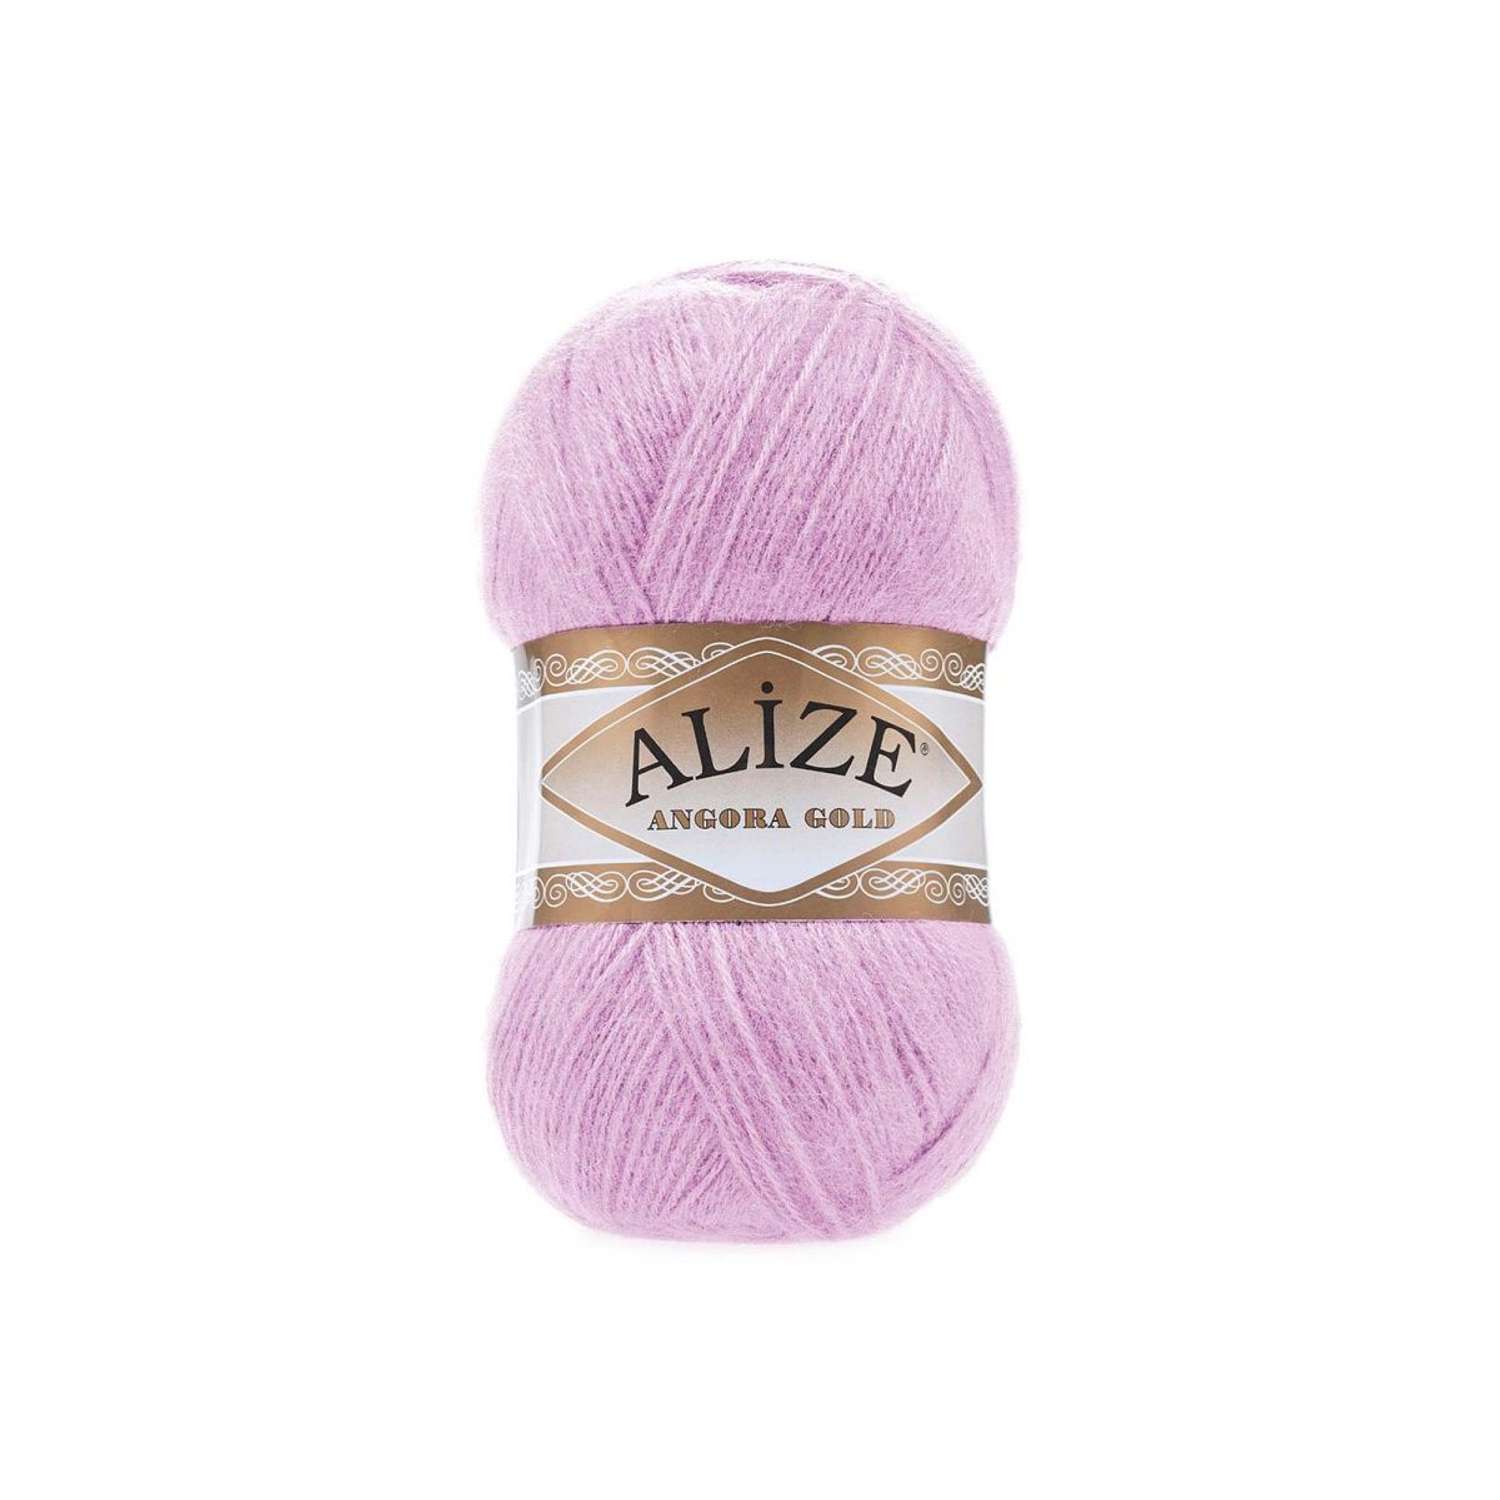 Пряжа Alize мягкая теплая для шарфов кардиганов Angora Gold 100 гр 550 м 5 мотков 27 светло-сиреневый - фото 6